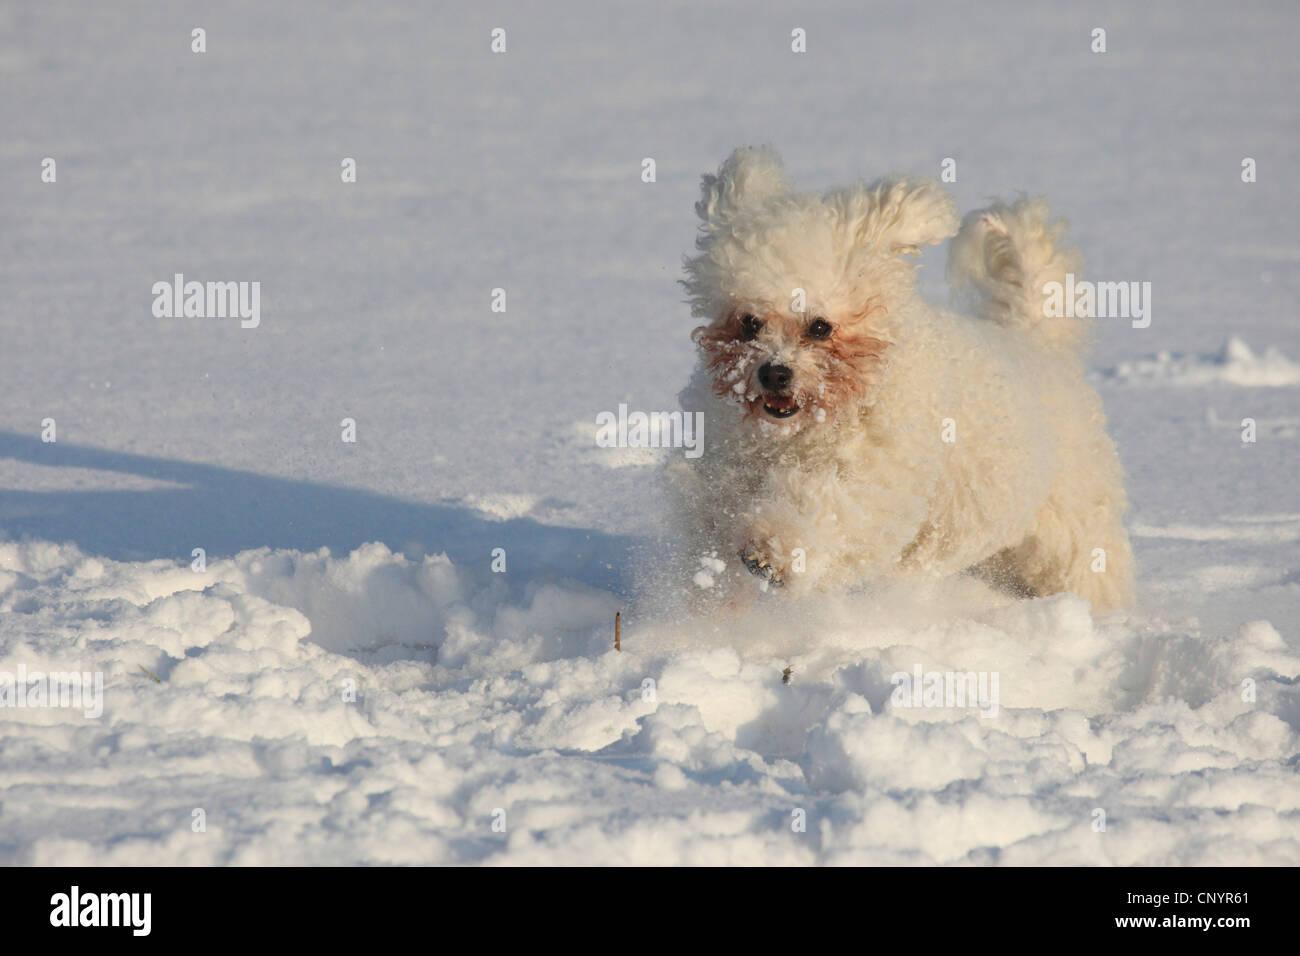 Bichon fris (Canis lupus f. familiaris), romping in snow Stock Photo